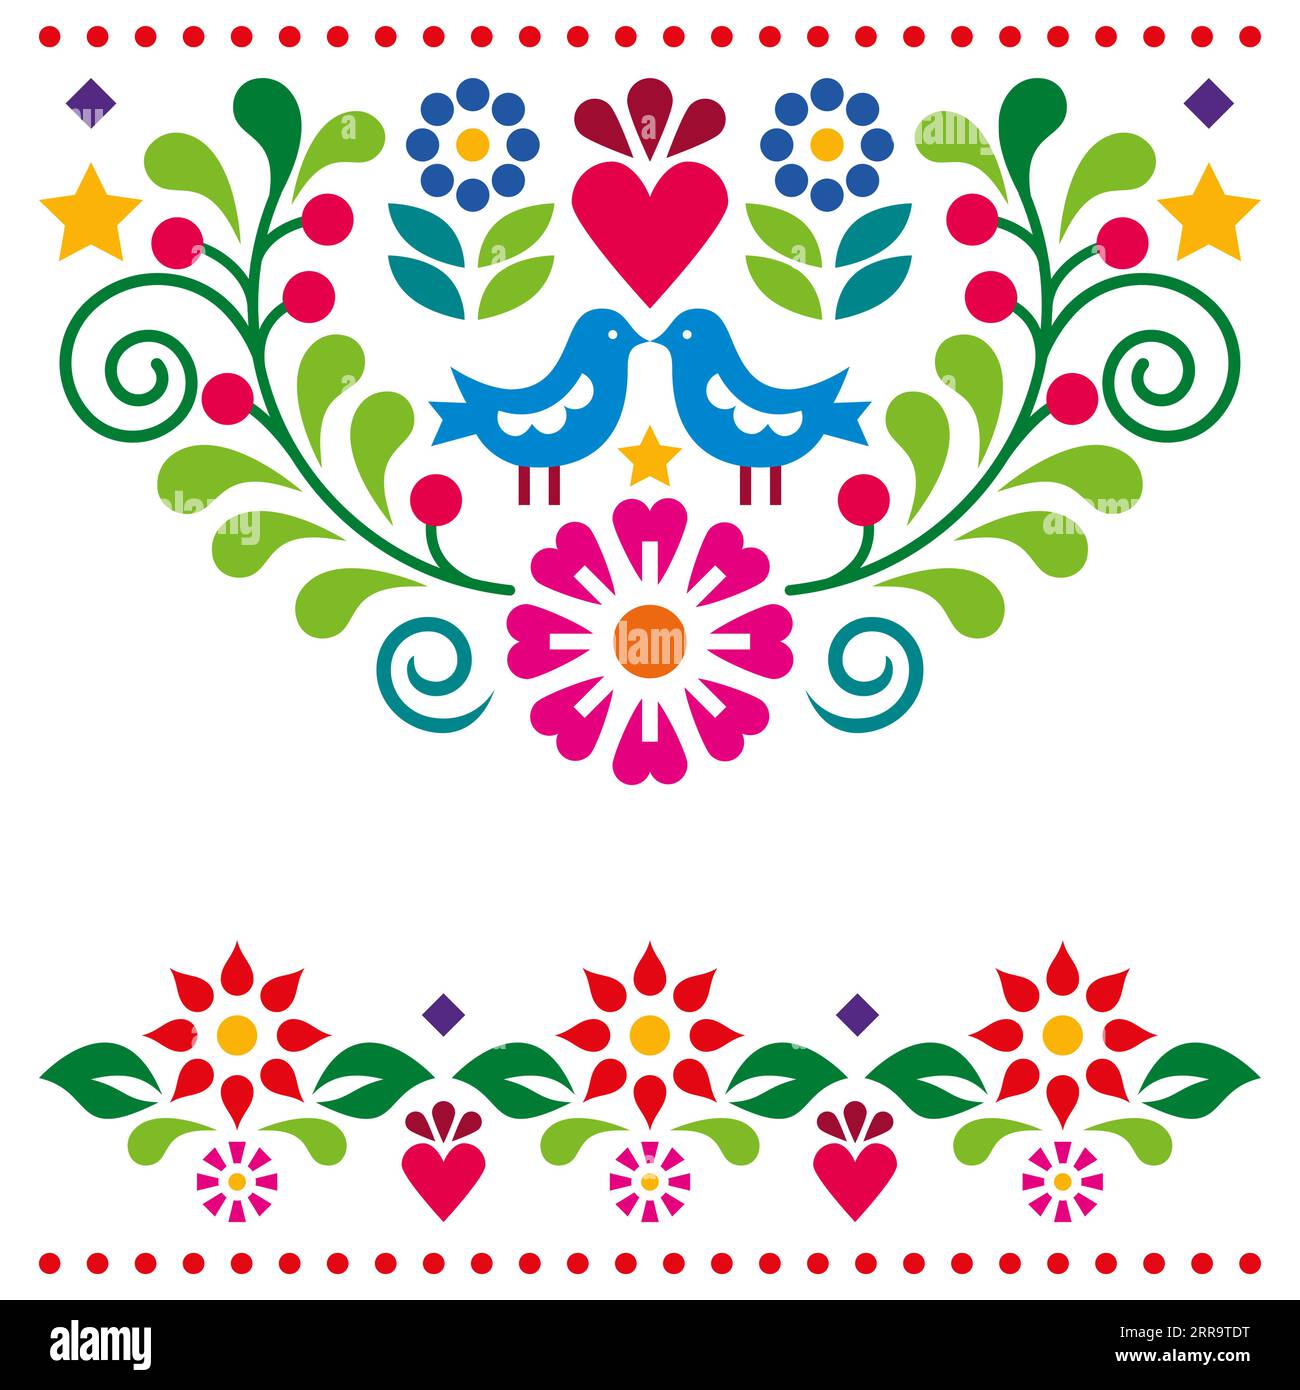 Biglietto d'auguri vettoriale in stile arte popolare messicana o disegno di invito di matrimonio con fiori e due uccelli Illustrazione Vettoriale